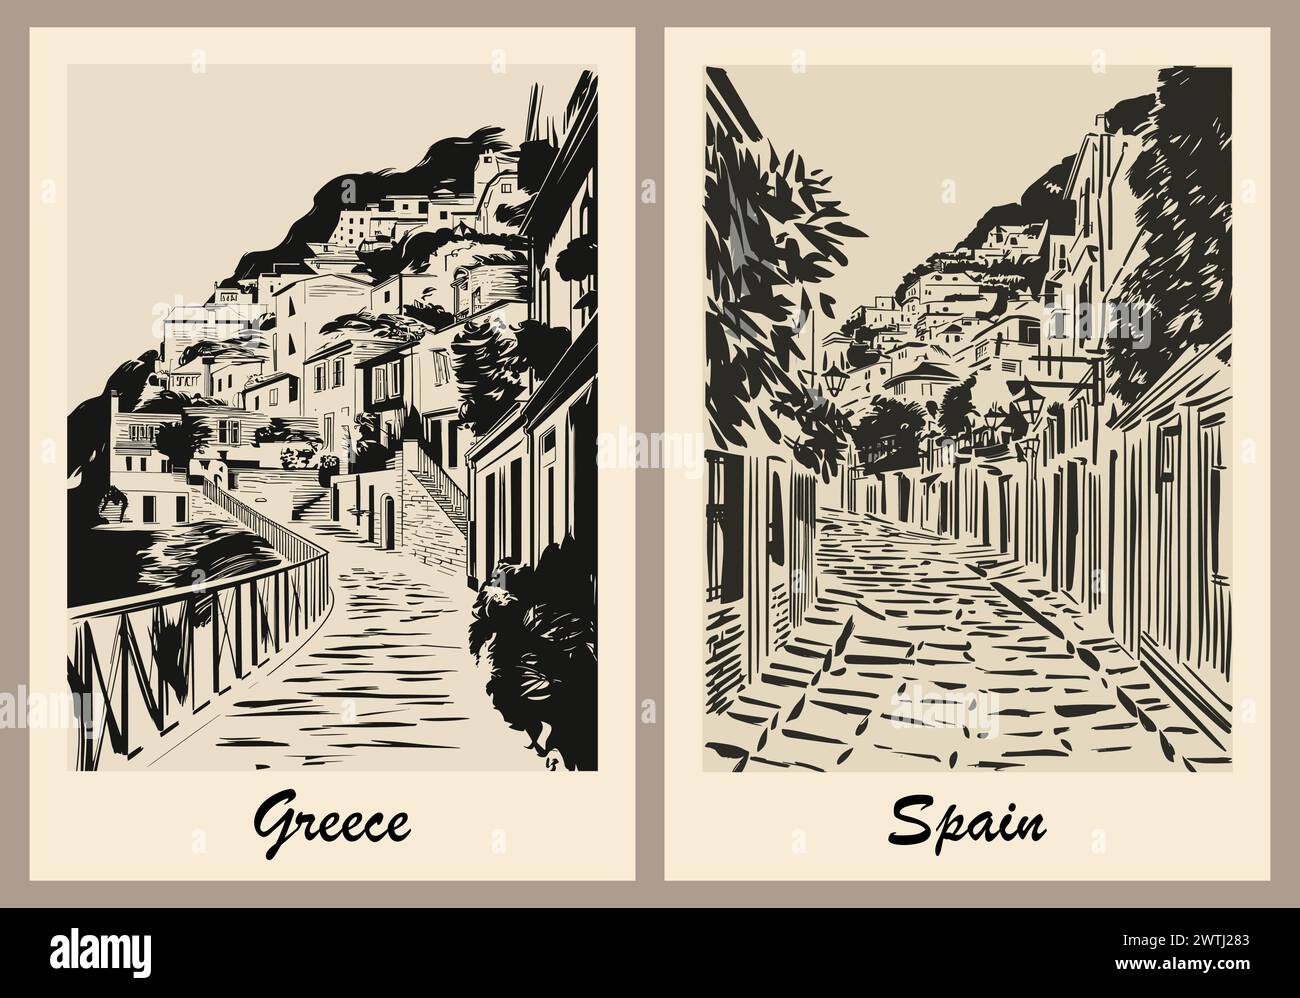 Griechenland und Spanien Reiseplakate im Retro-Stil. Stock Vektor